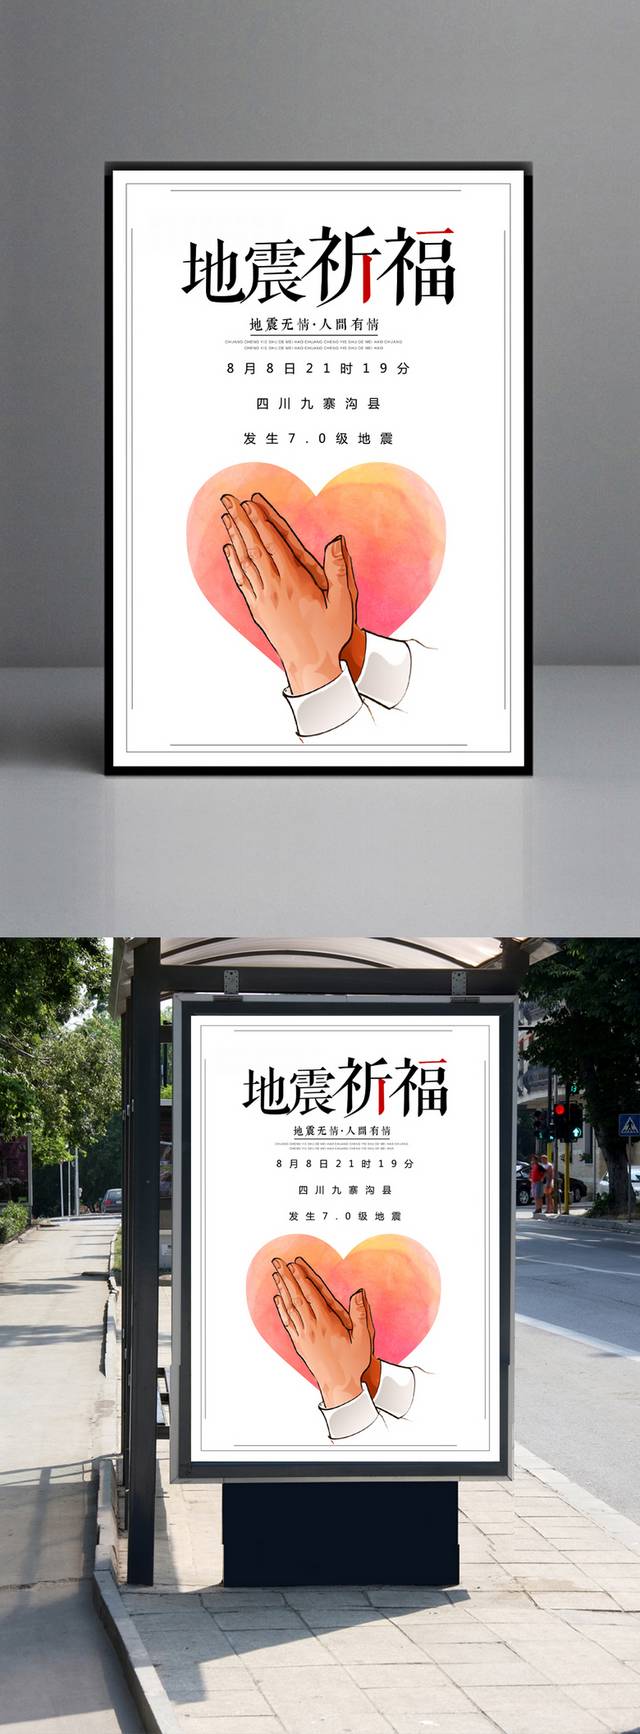 四川地震祈福海报